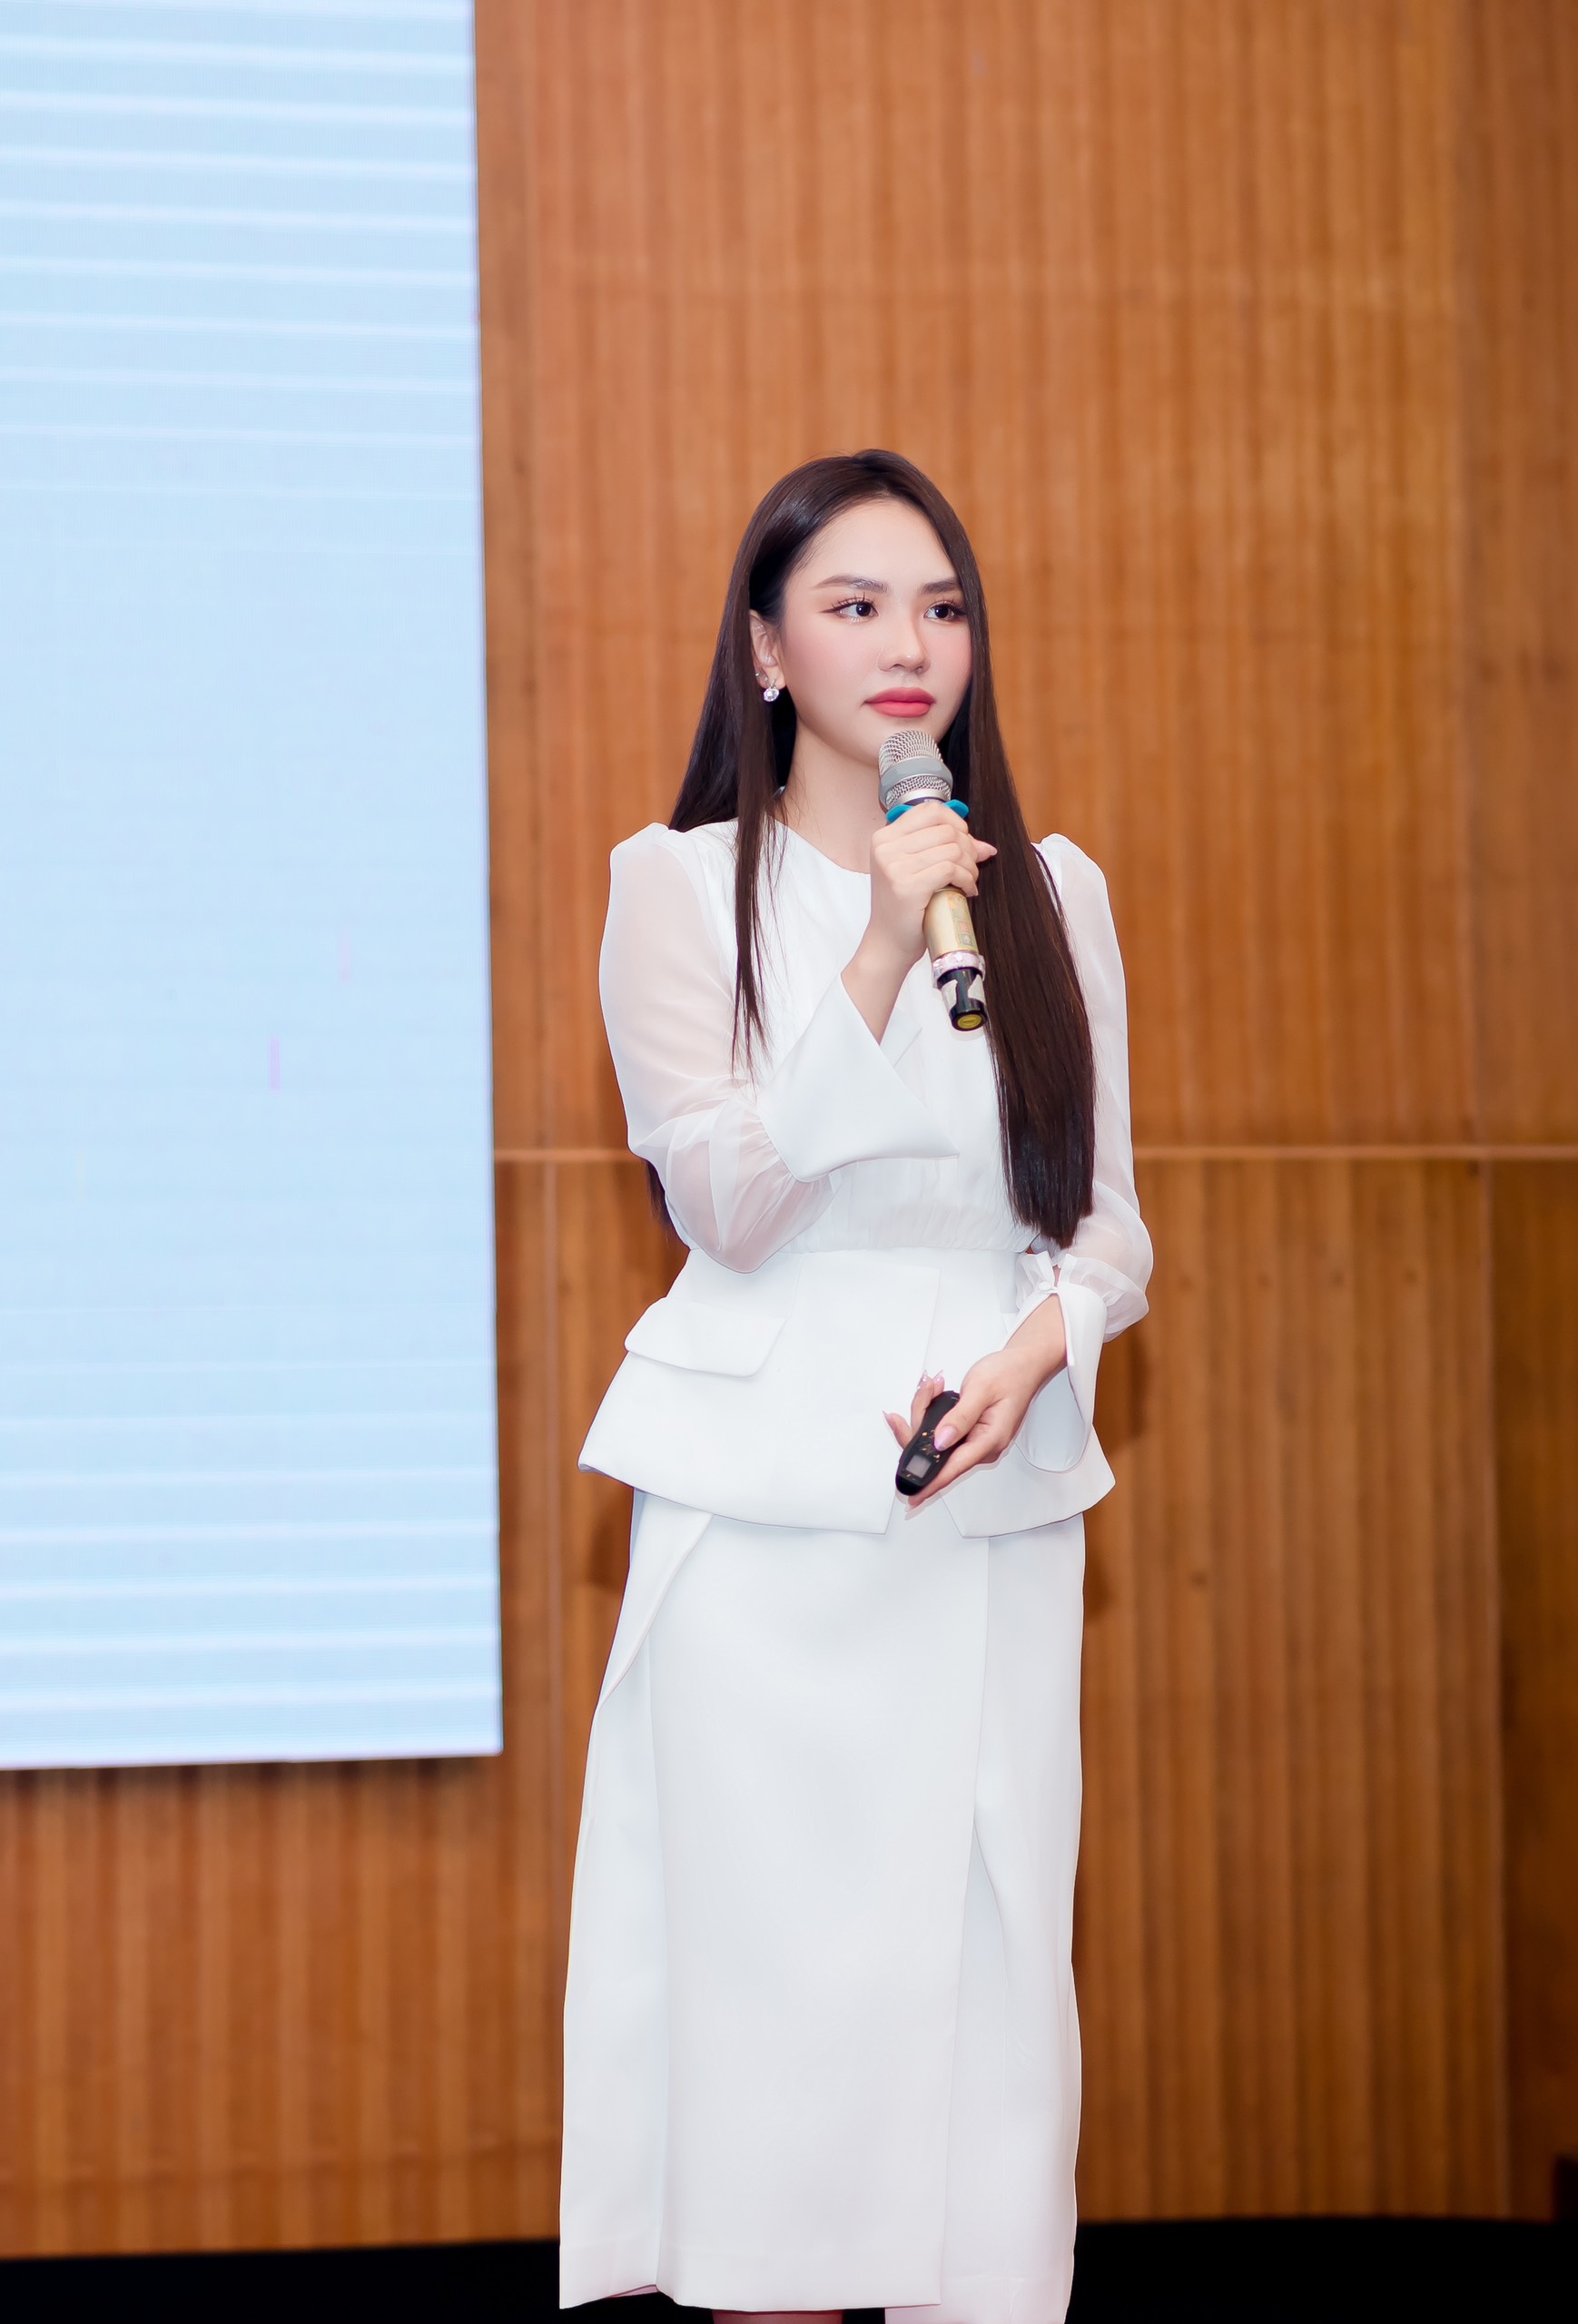 Hoa hậu Mai Phương thừa nhận từng tuyệt vọng khi gặp nhiều biến cố - ảnh 1